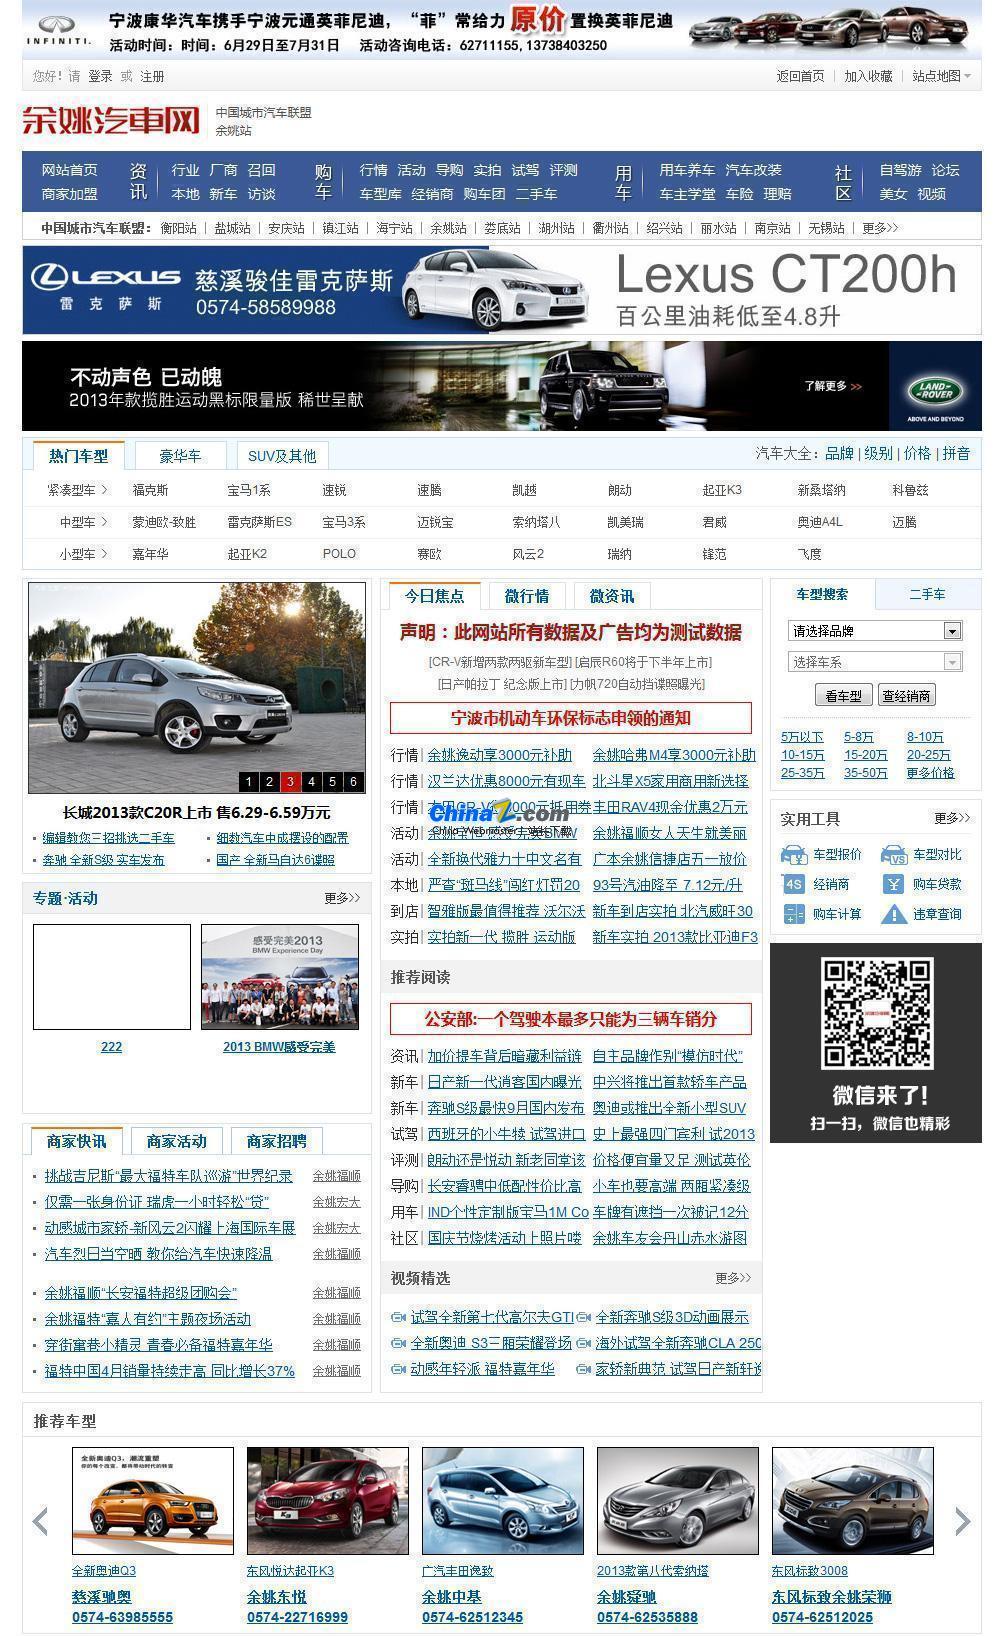 汽车网程序E-AUTO X3.0v2019.9.30